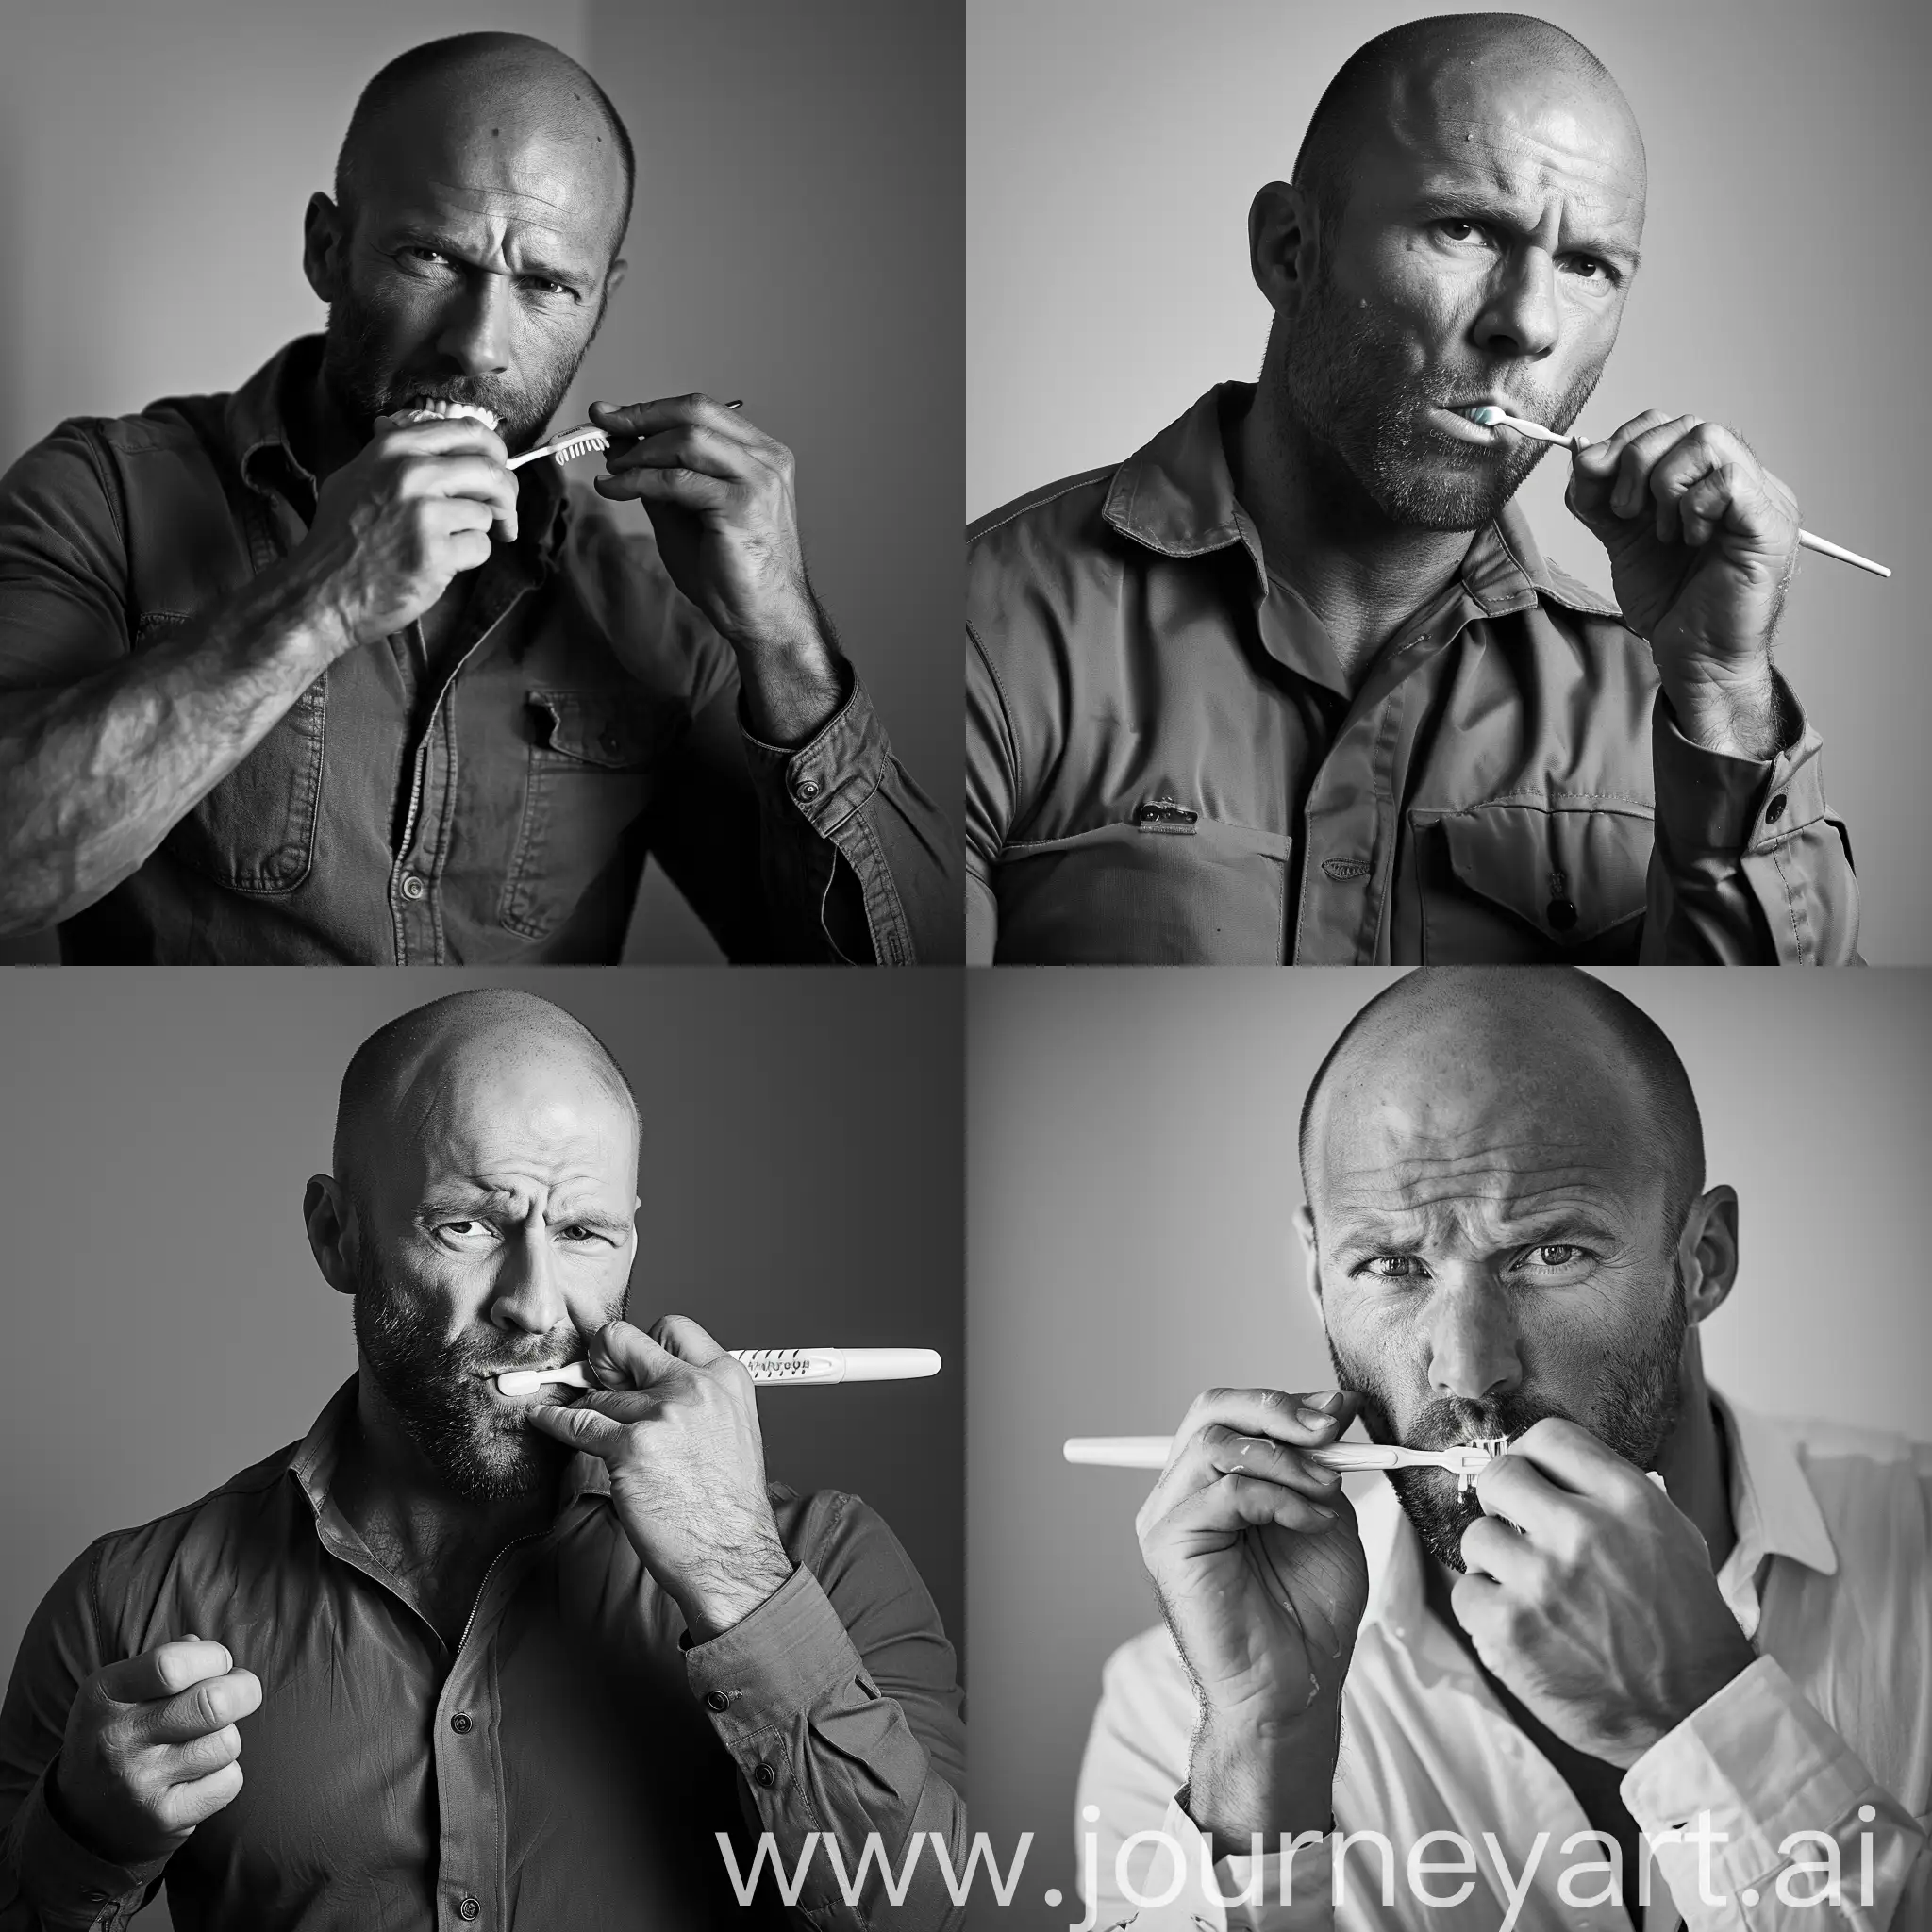 Jason-Statham-Stylishly-Brushing-Teeth-in-Black-and-White-Photo